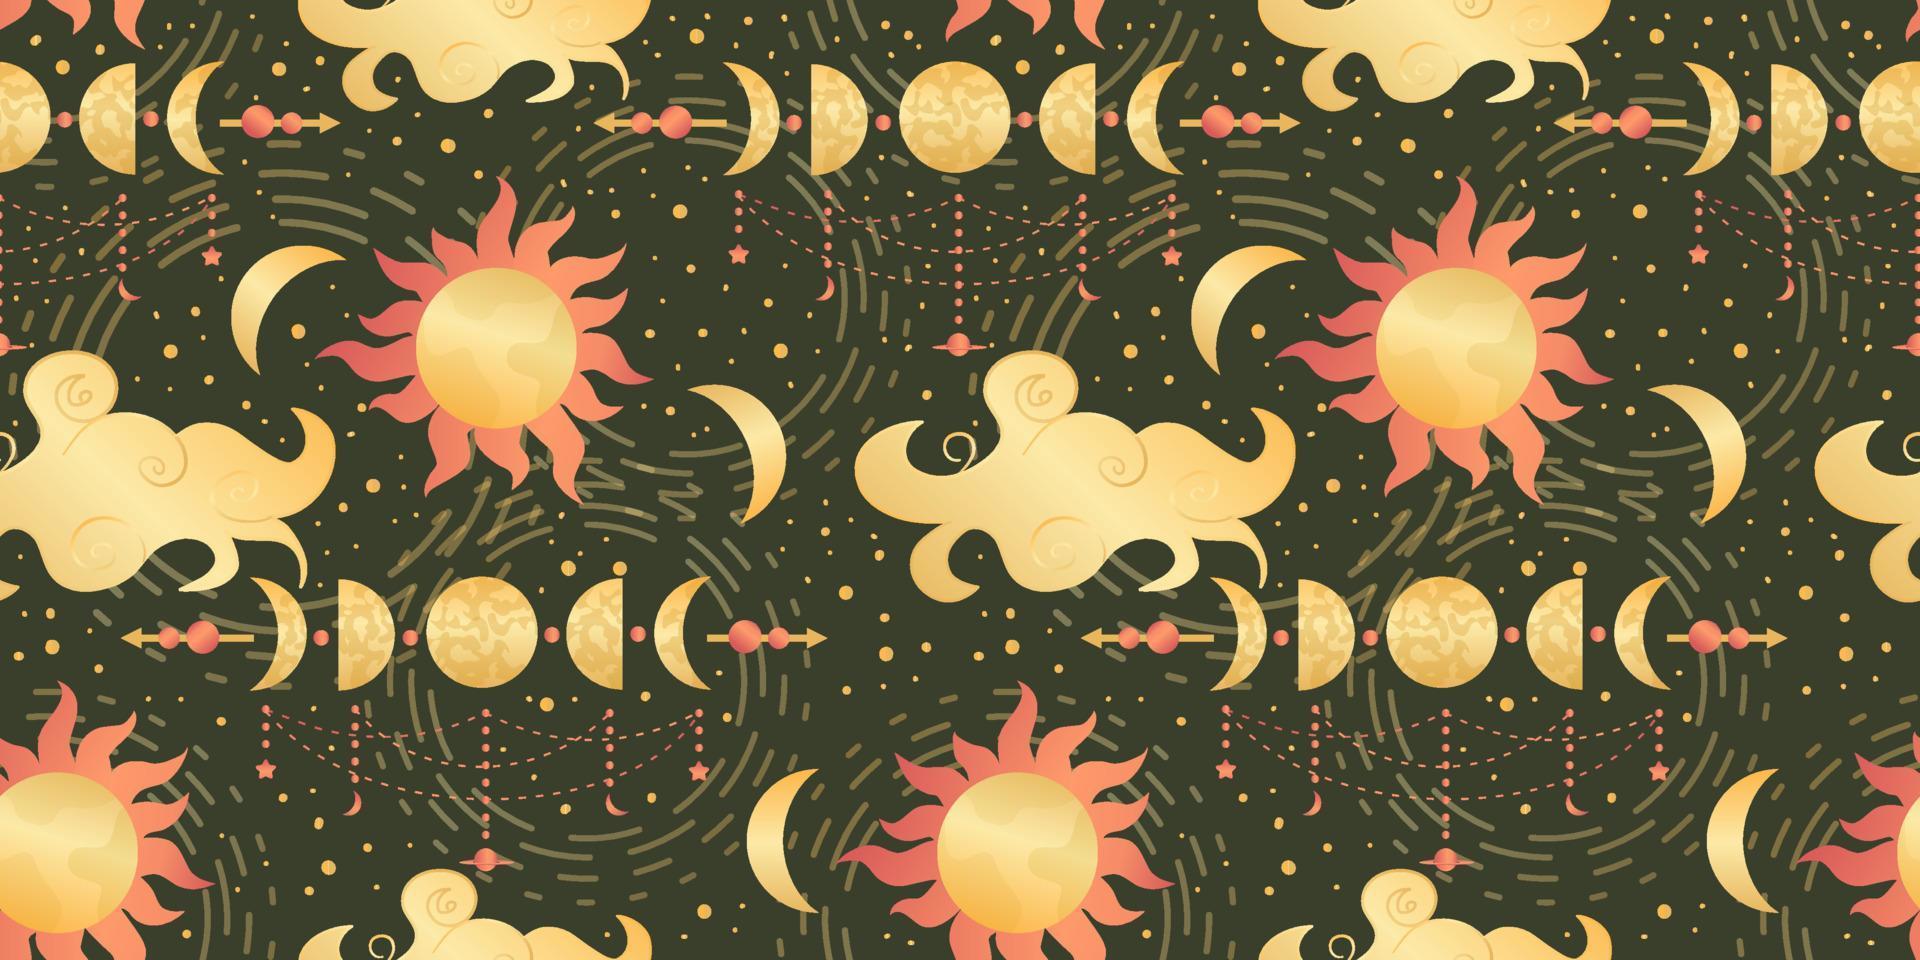 hemelse naadloze patroon met zon, maan en sterren. magische astrologie in boho vintage stijl. mystieke heidense gouden zon met planeten en maanstanden. vectorillustratie. vector